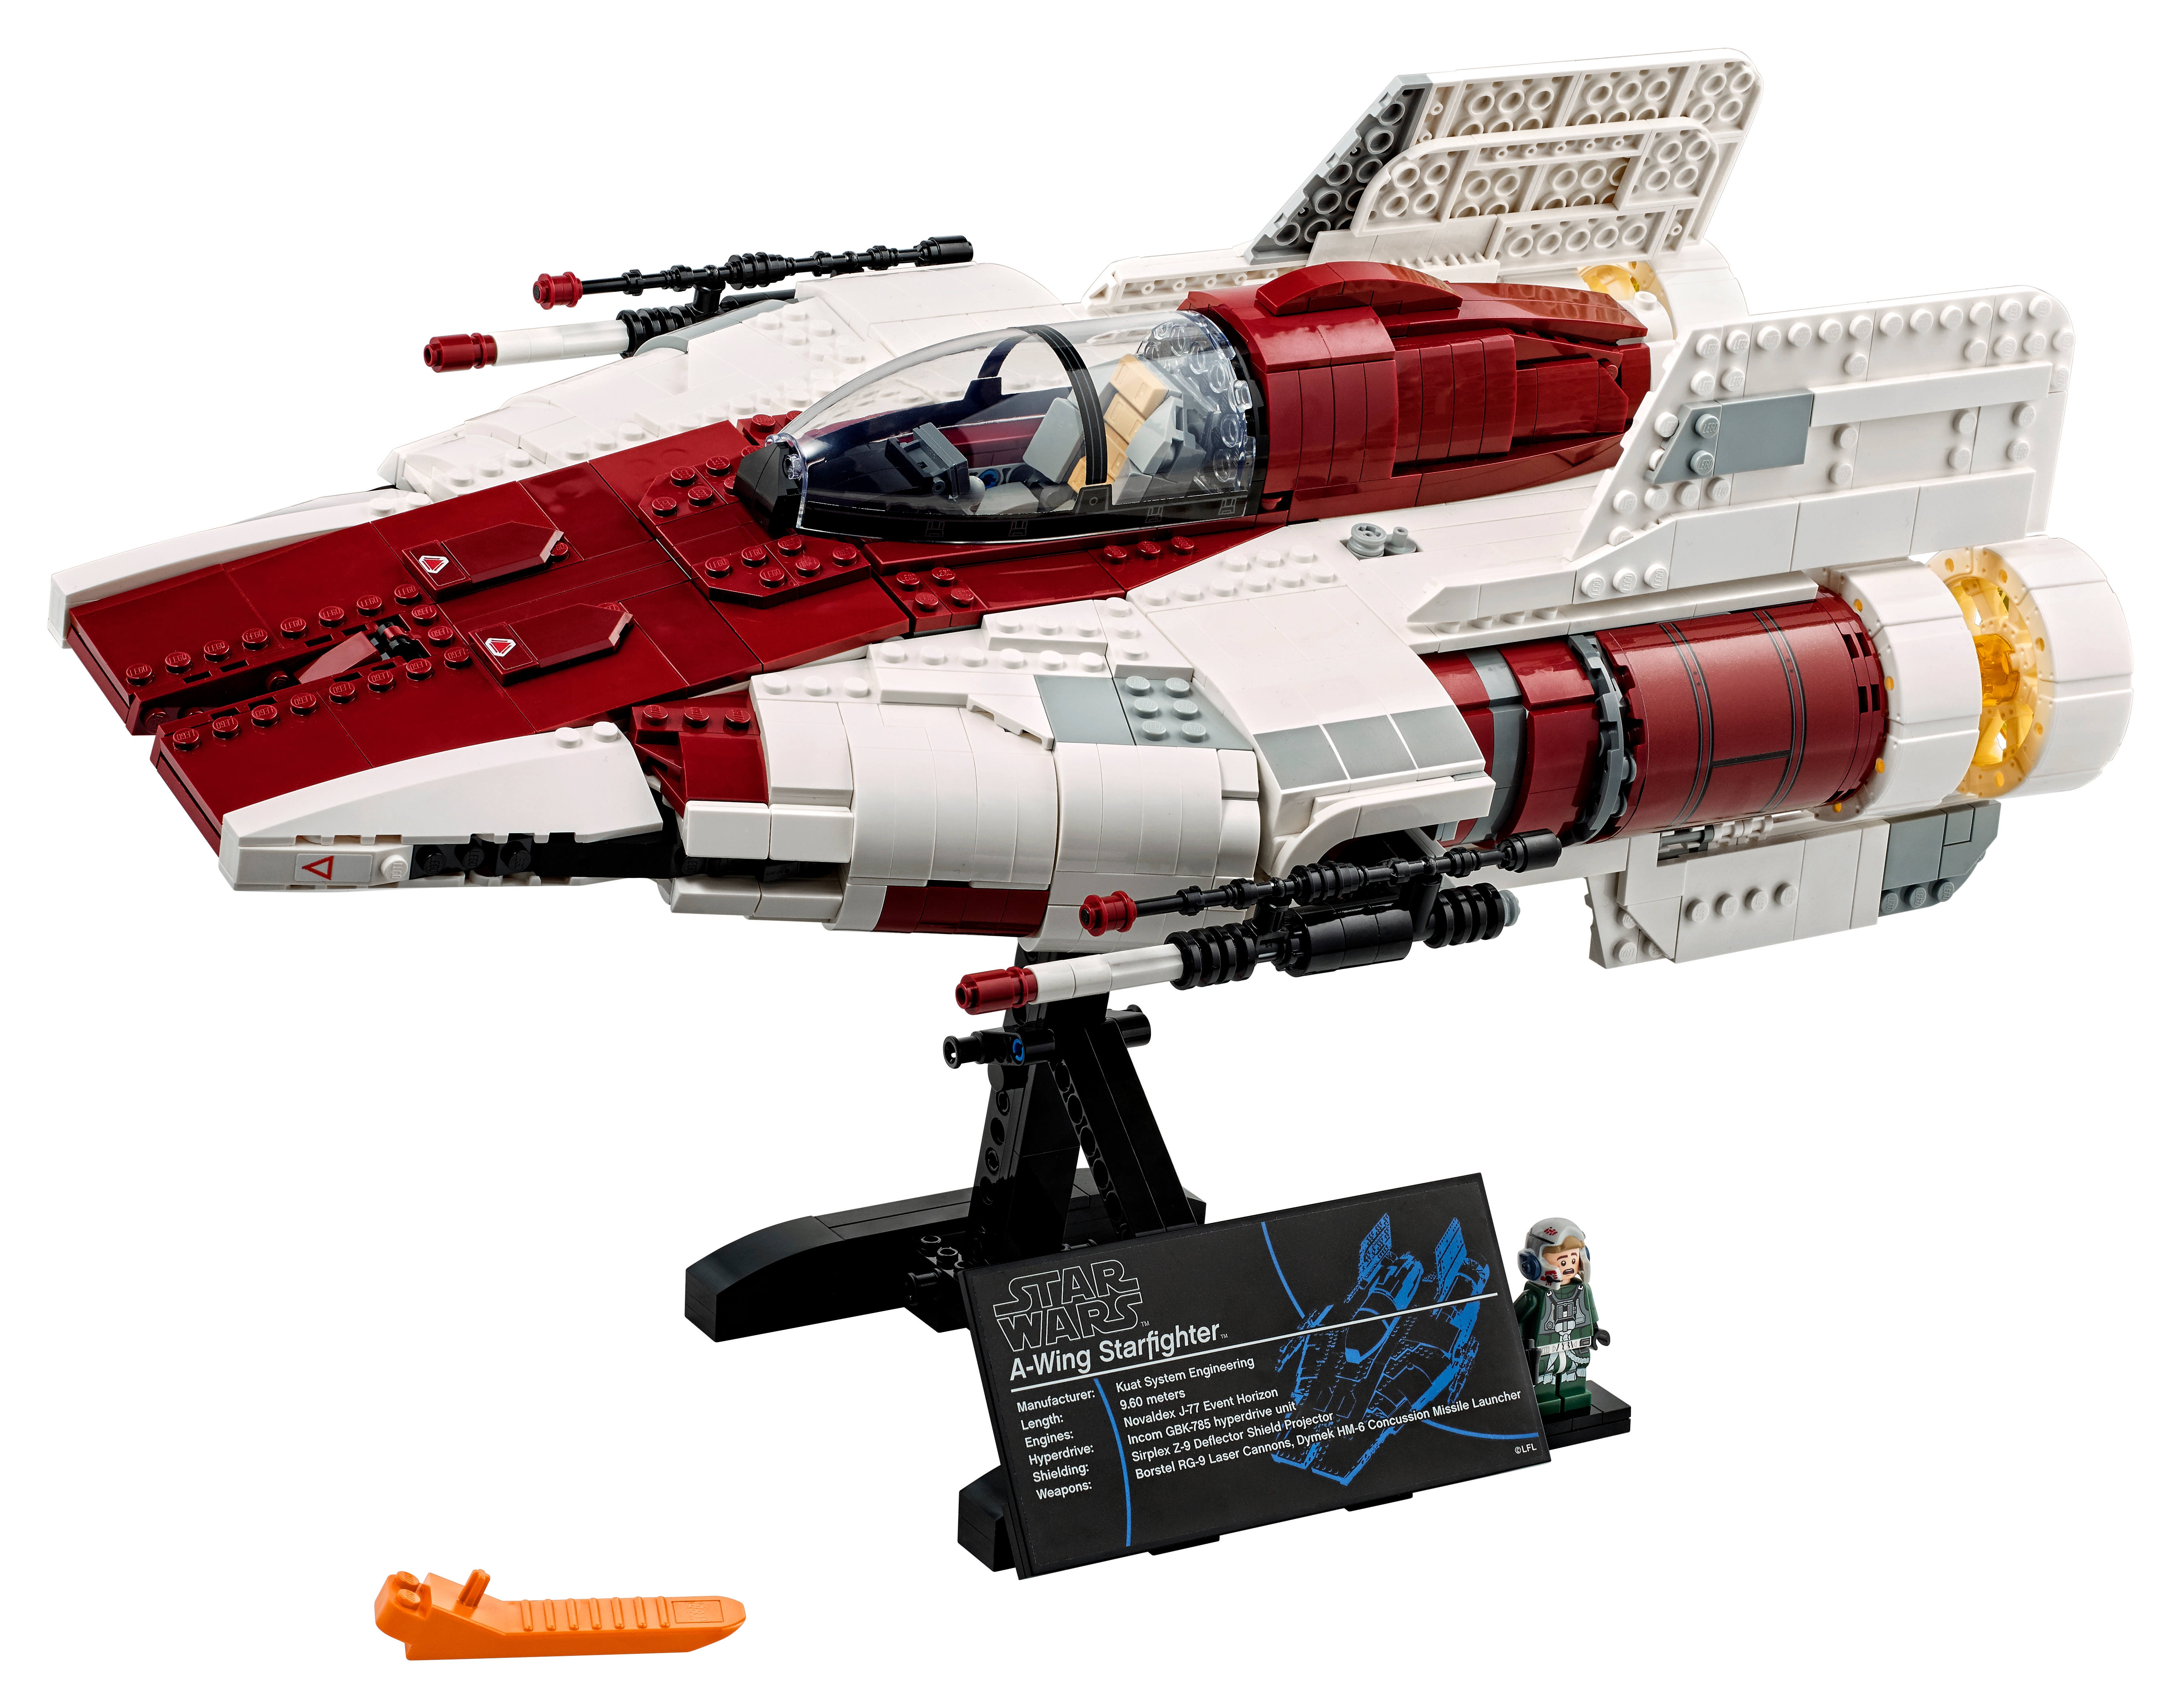 star wars lego collectors edition